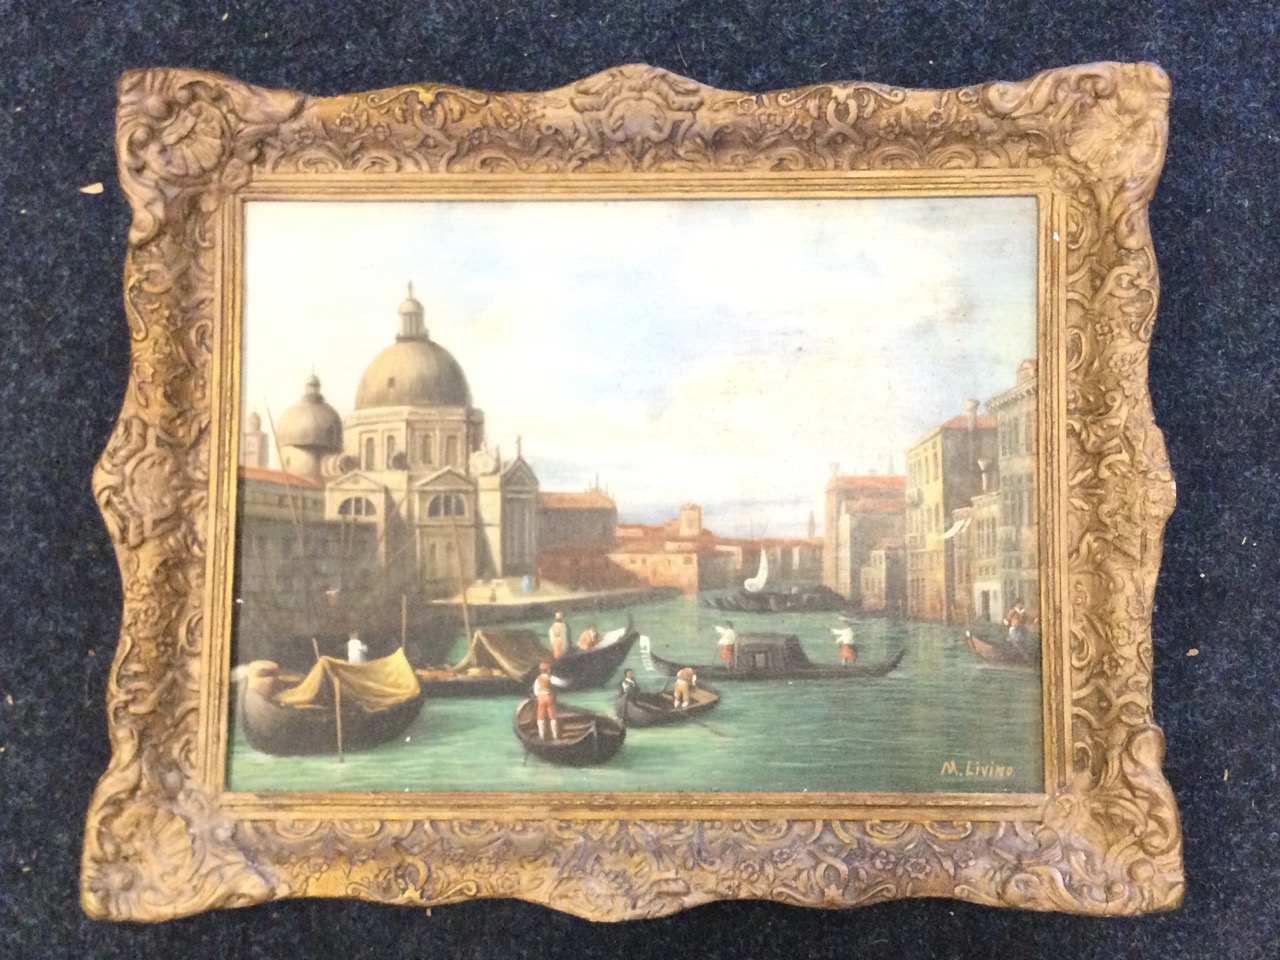 M Livino, after Guardi, C20th oil on canvas, the Grand Canal, Venice with Santa Maria della